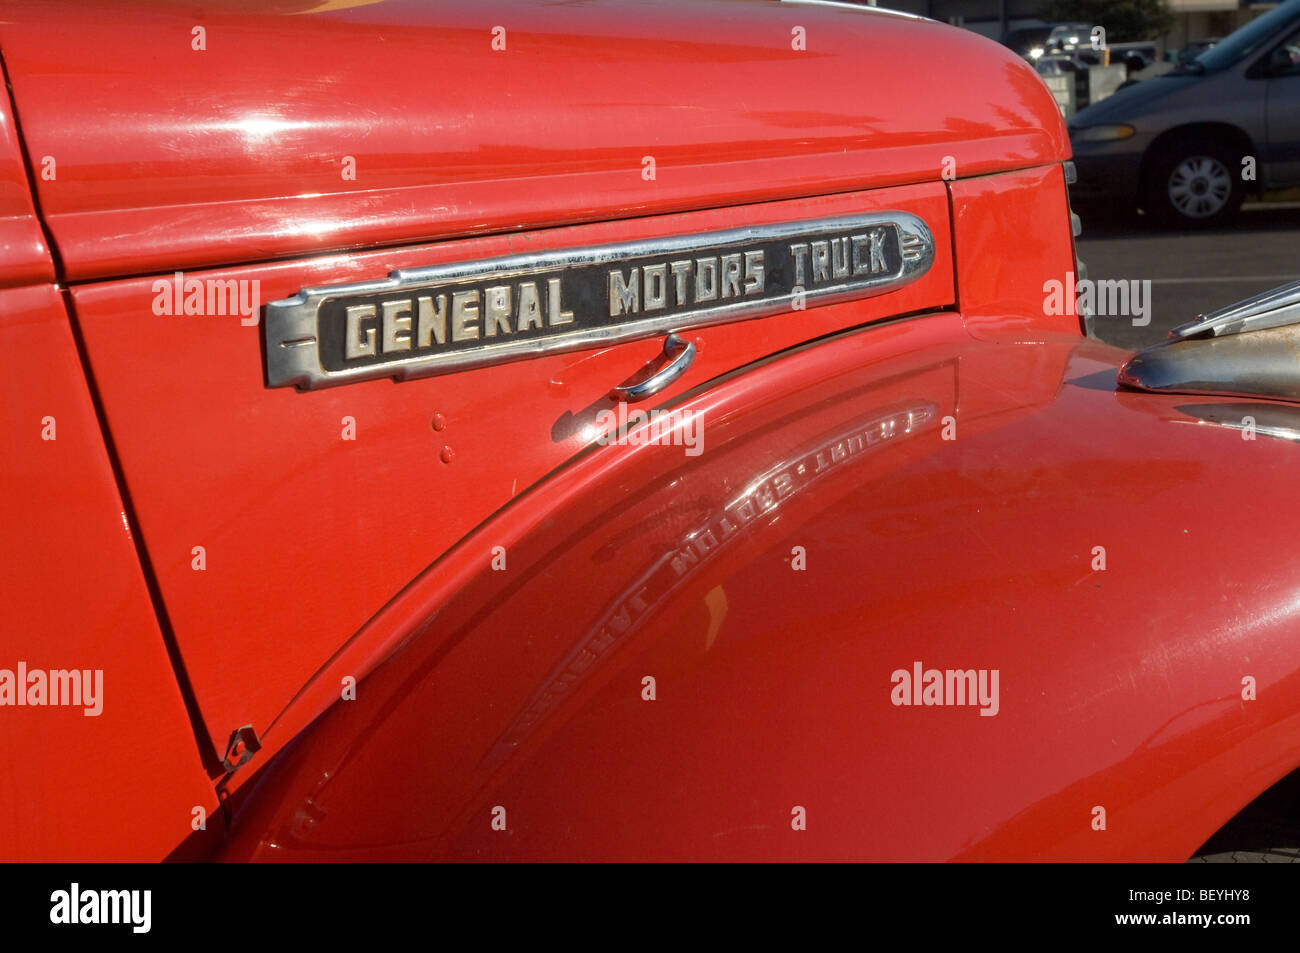 Utilizzato per la pubblicità, la General Motors Truck è visualizzata al di fuori del mondo operativo più vecchio ristorante McDonald's. Foto Stock